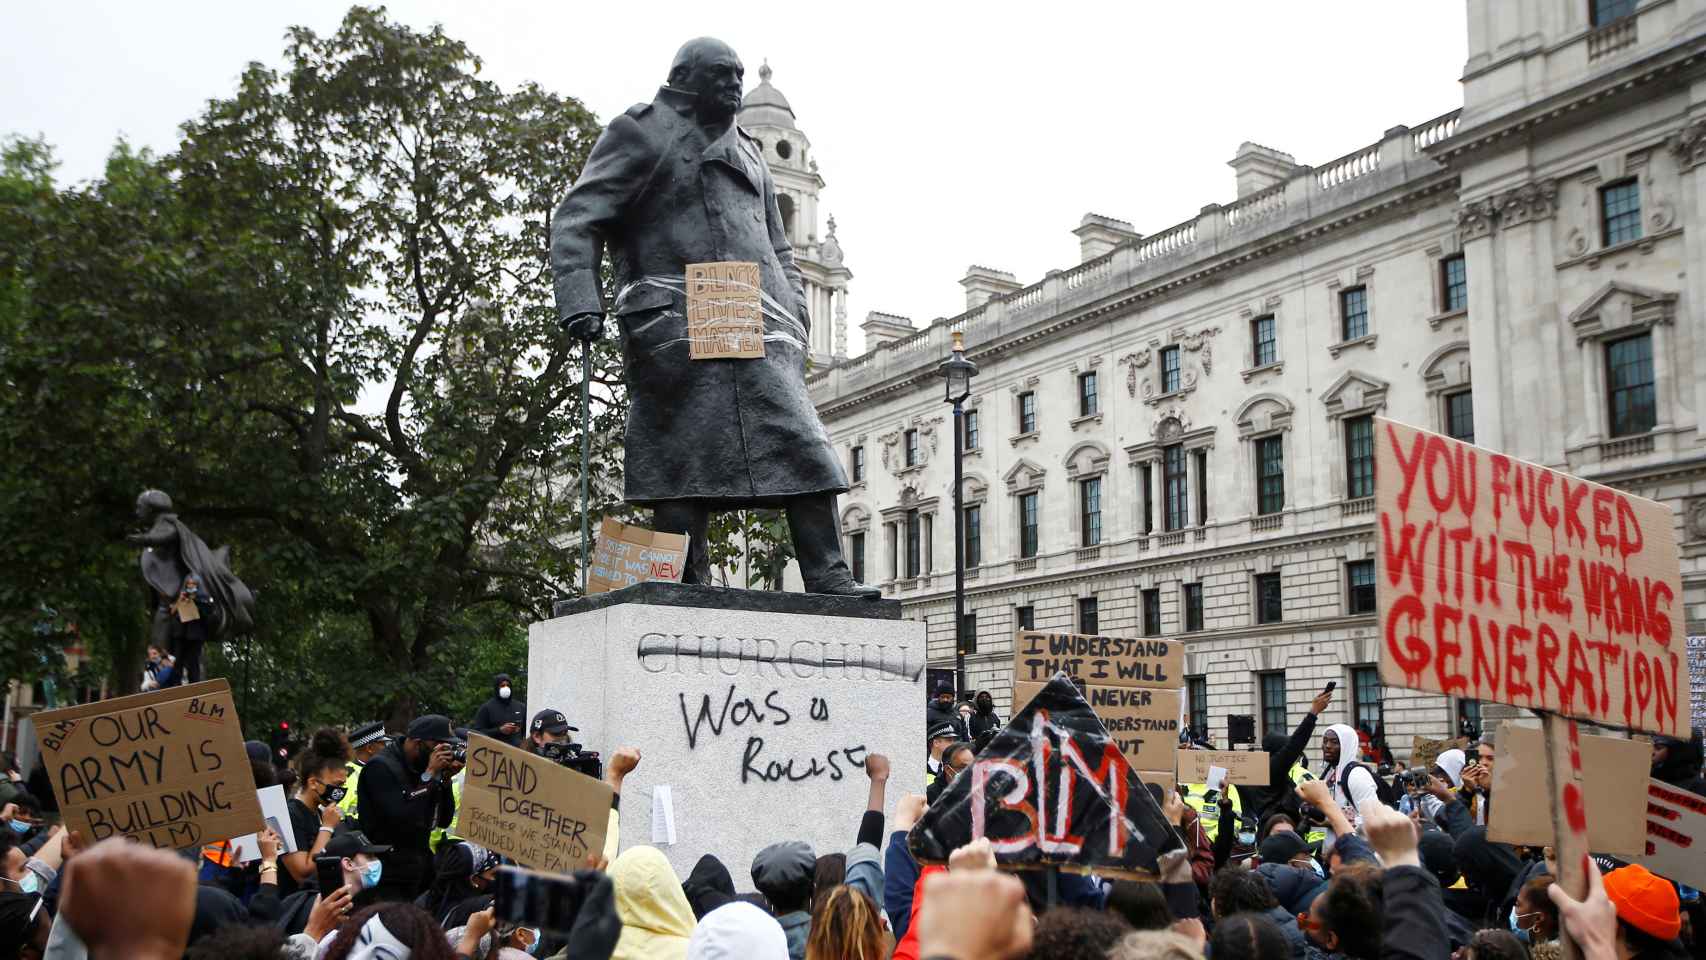 La estatua de Churchill en Londres, vandalizada este domingo durante las protestas.